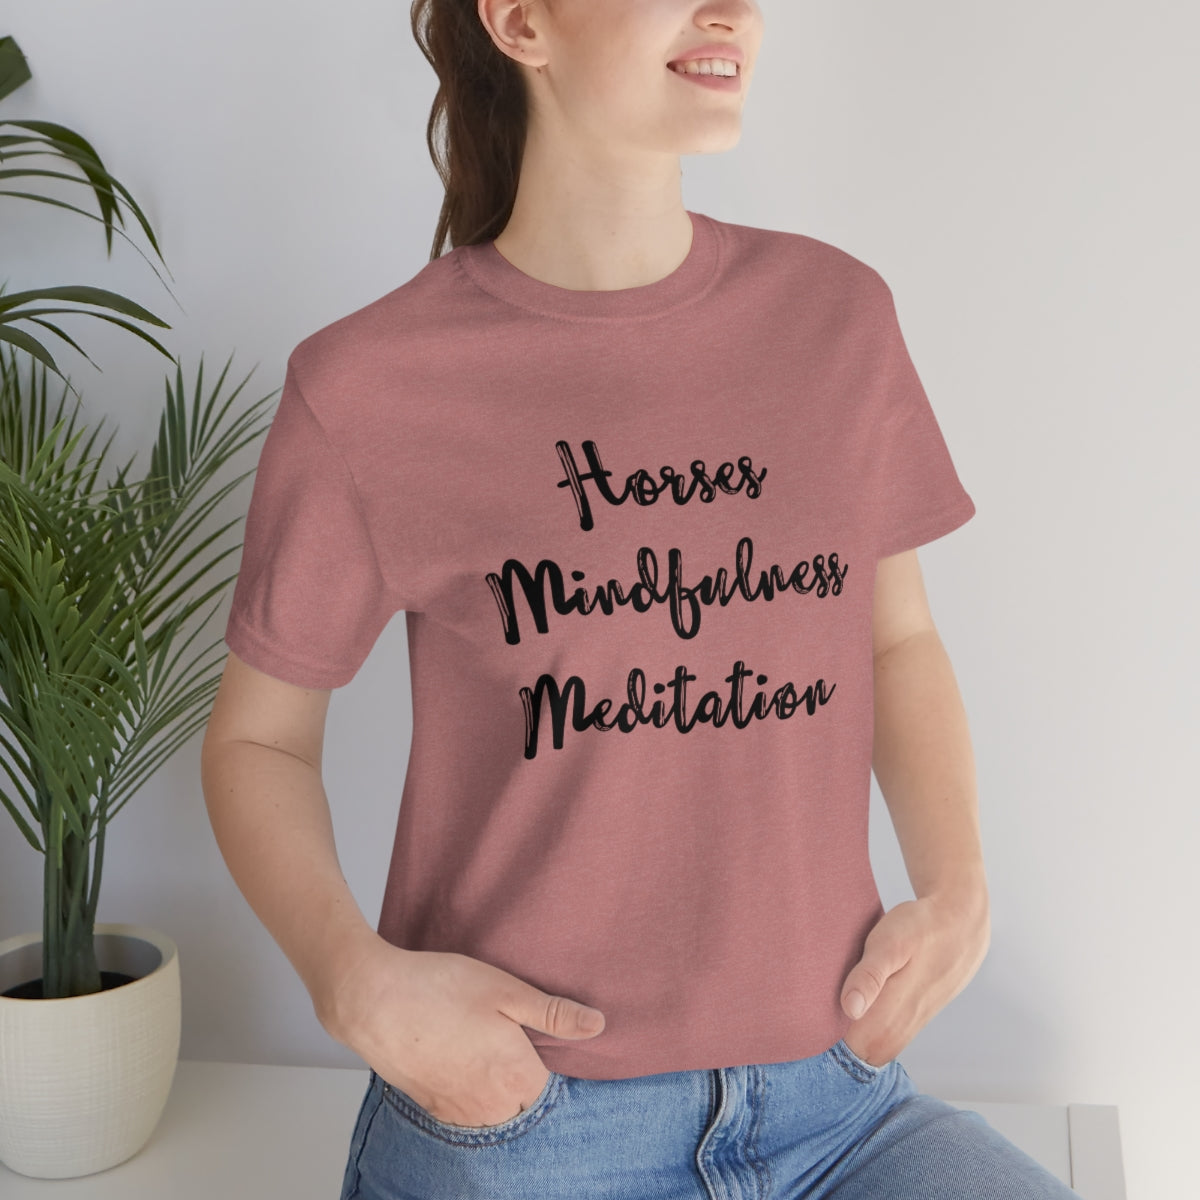 Horses Mindfulness Meditation